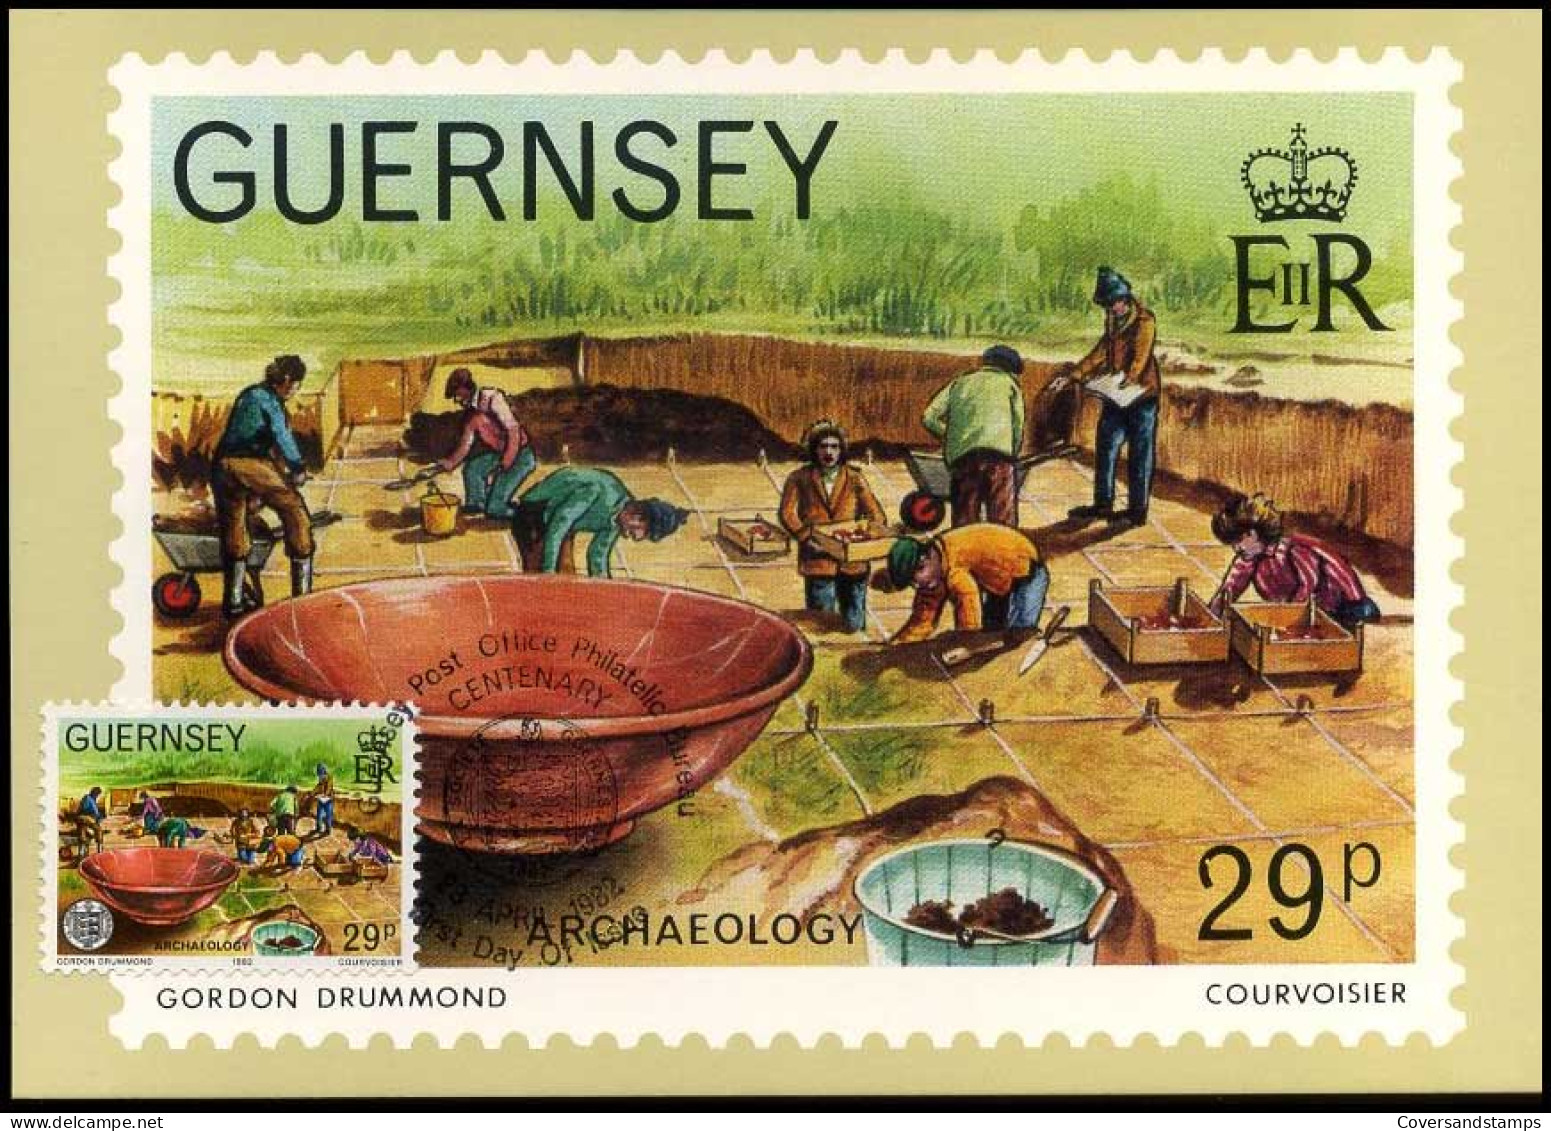 Guernsey - MK - Archeaeology                         - Guernsey